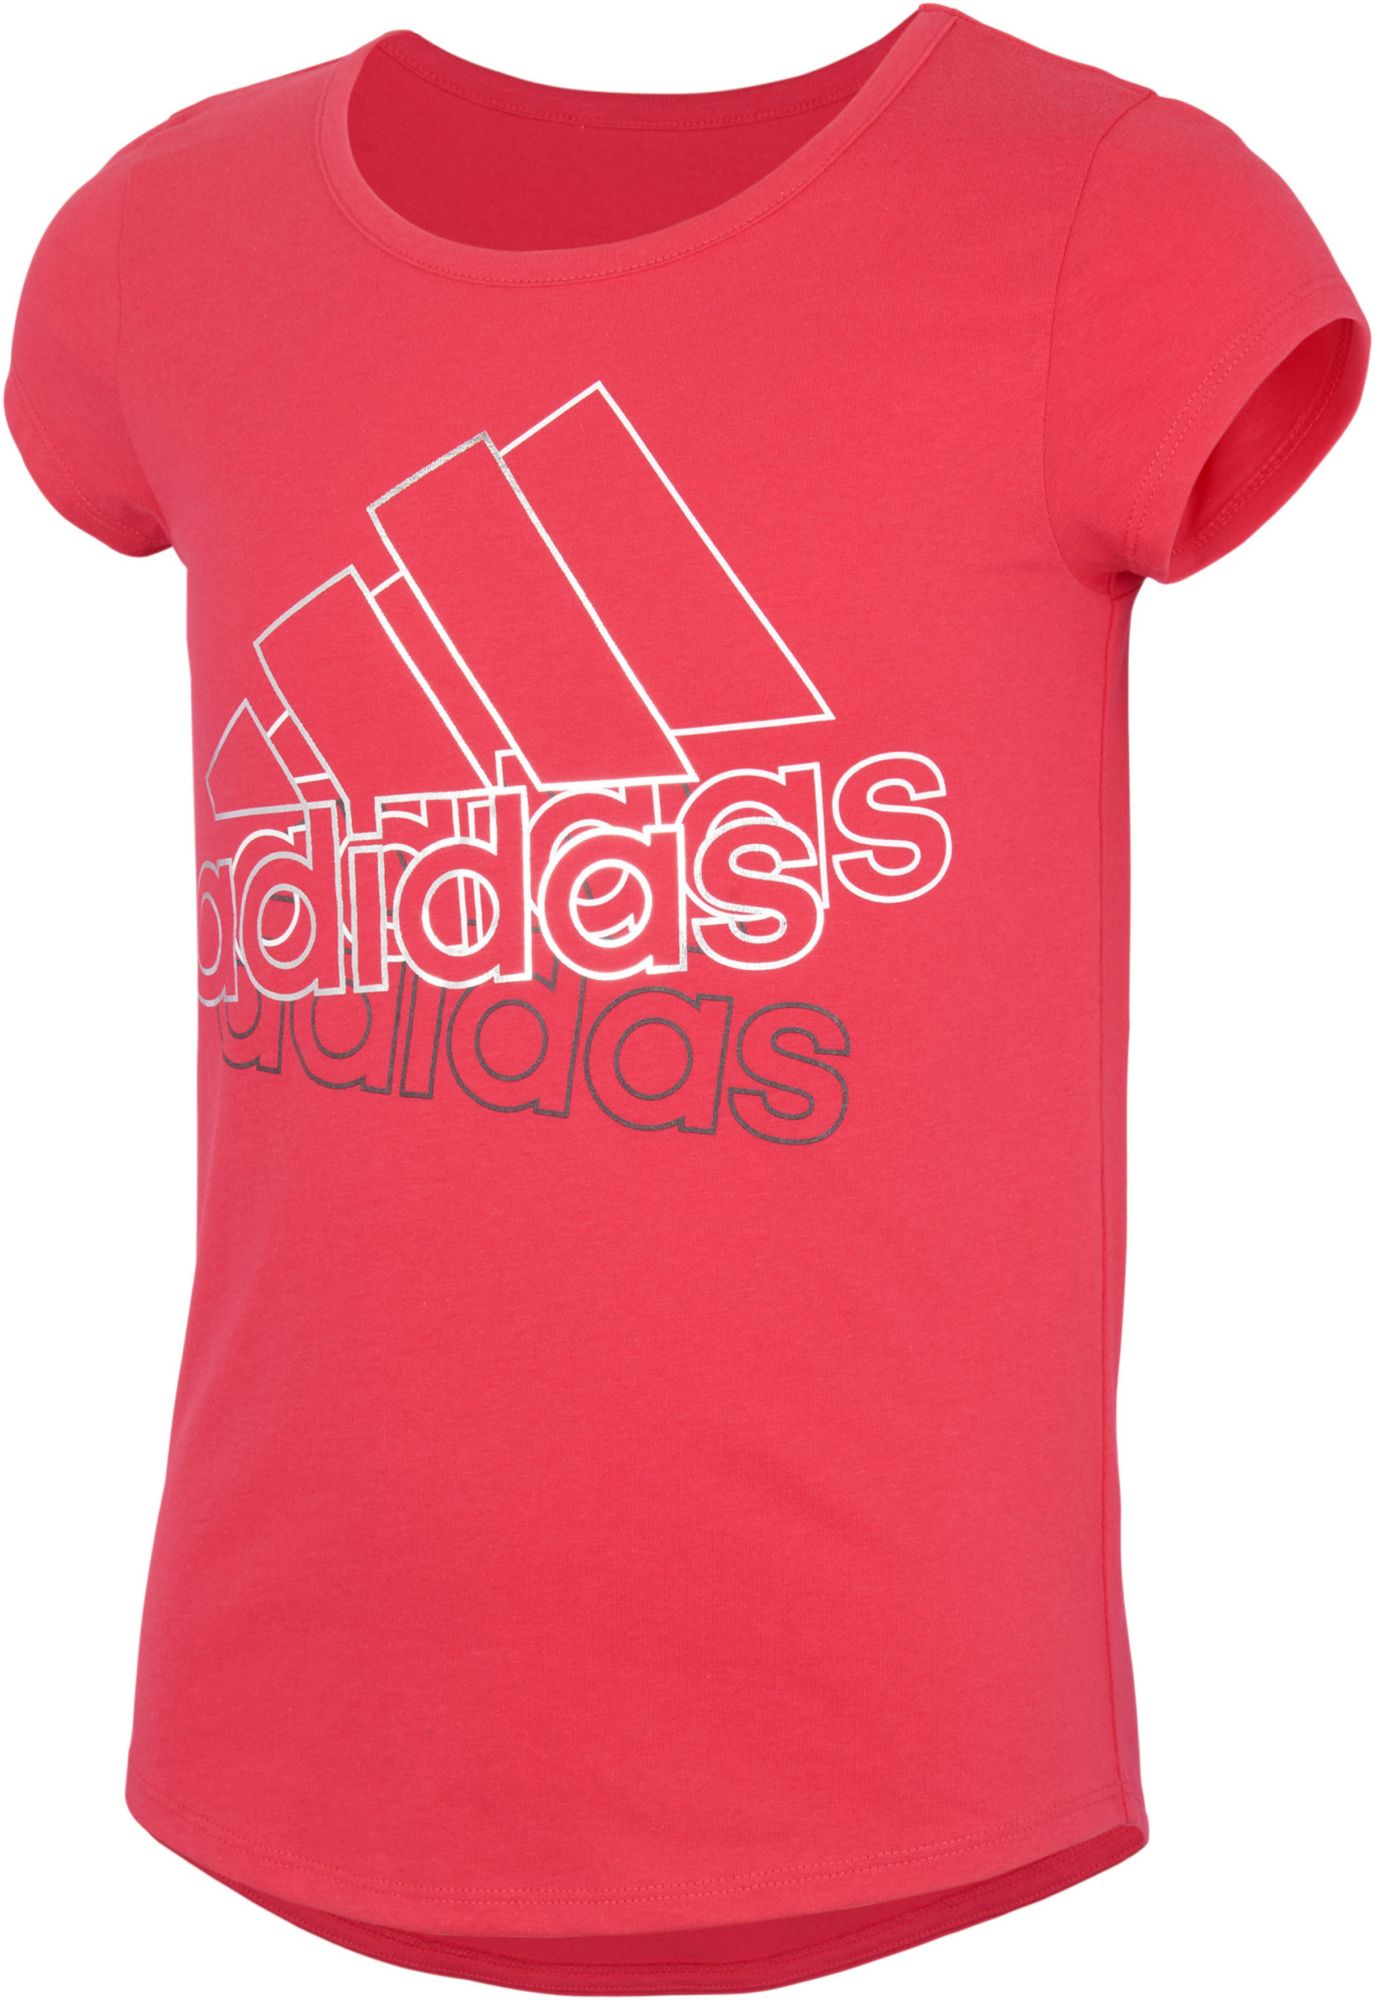 hot pink adidas shirt women's